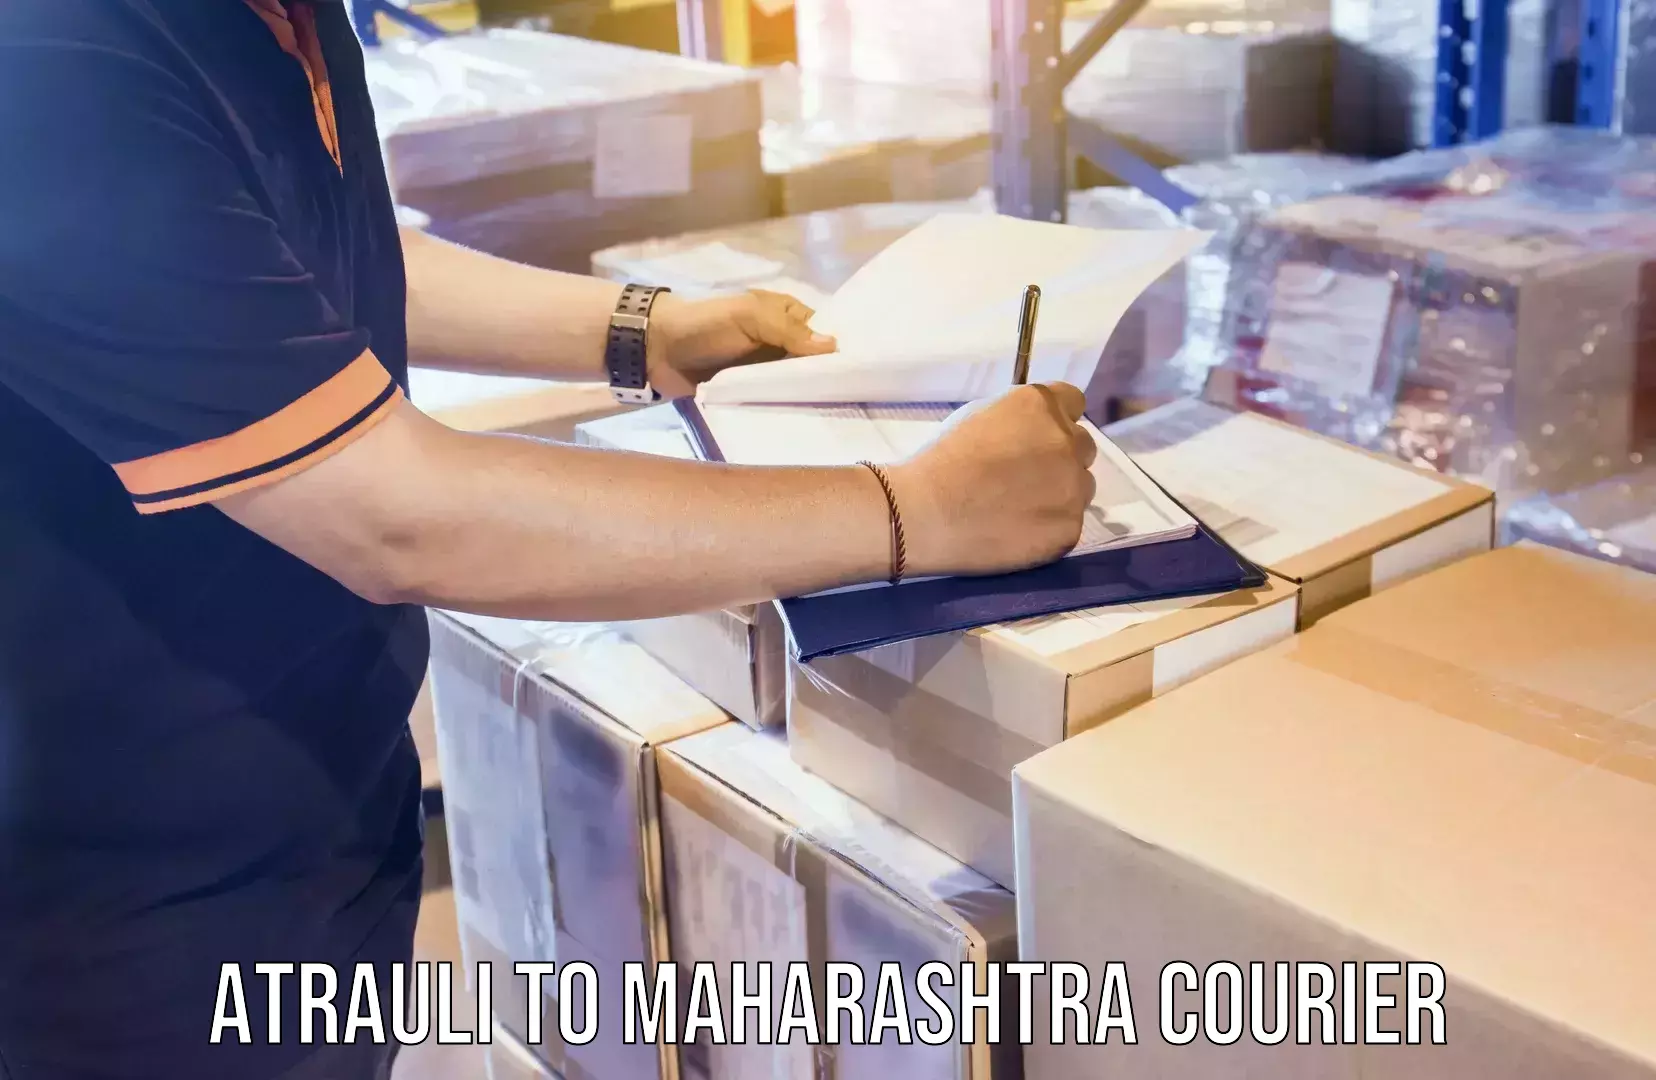 High-speed parcel service Atrauli to Maharashtra